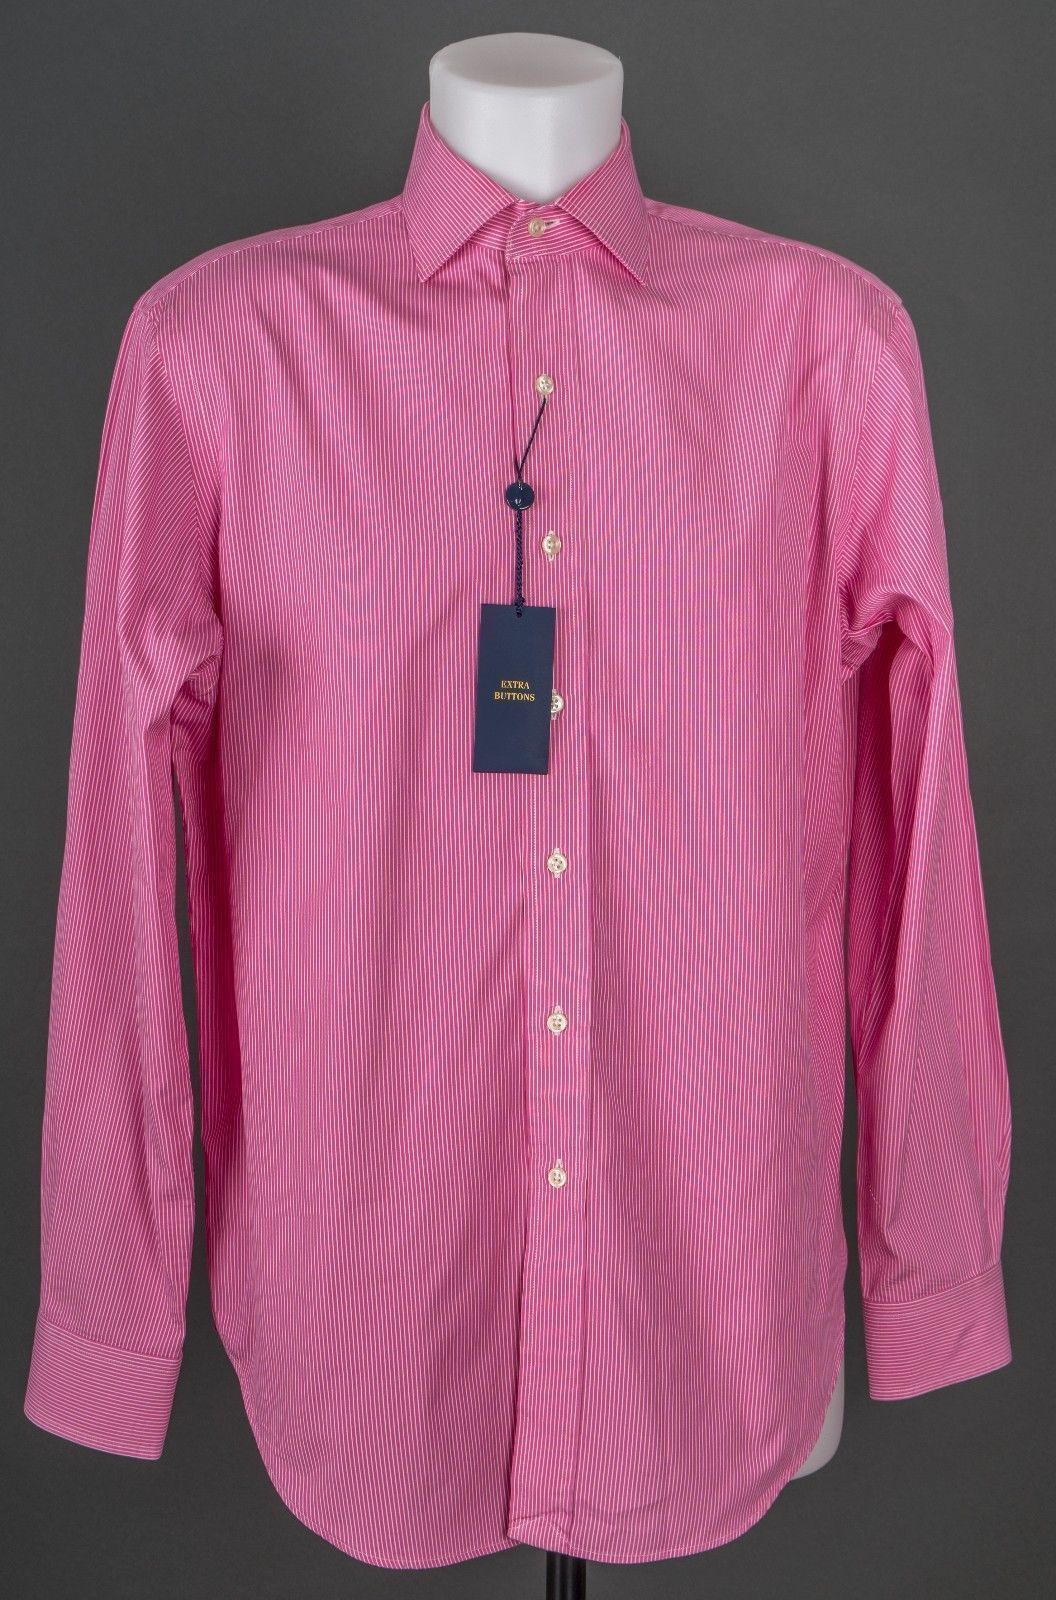 POLO RALPH LAUREN Button Down Shirt Pink White Stripes Size 15-1/2, 34/ ...